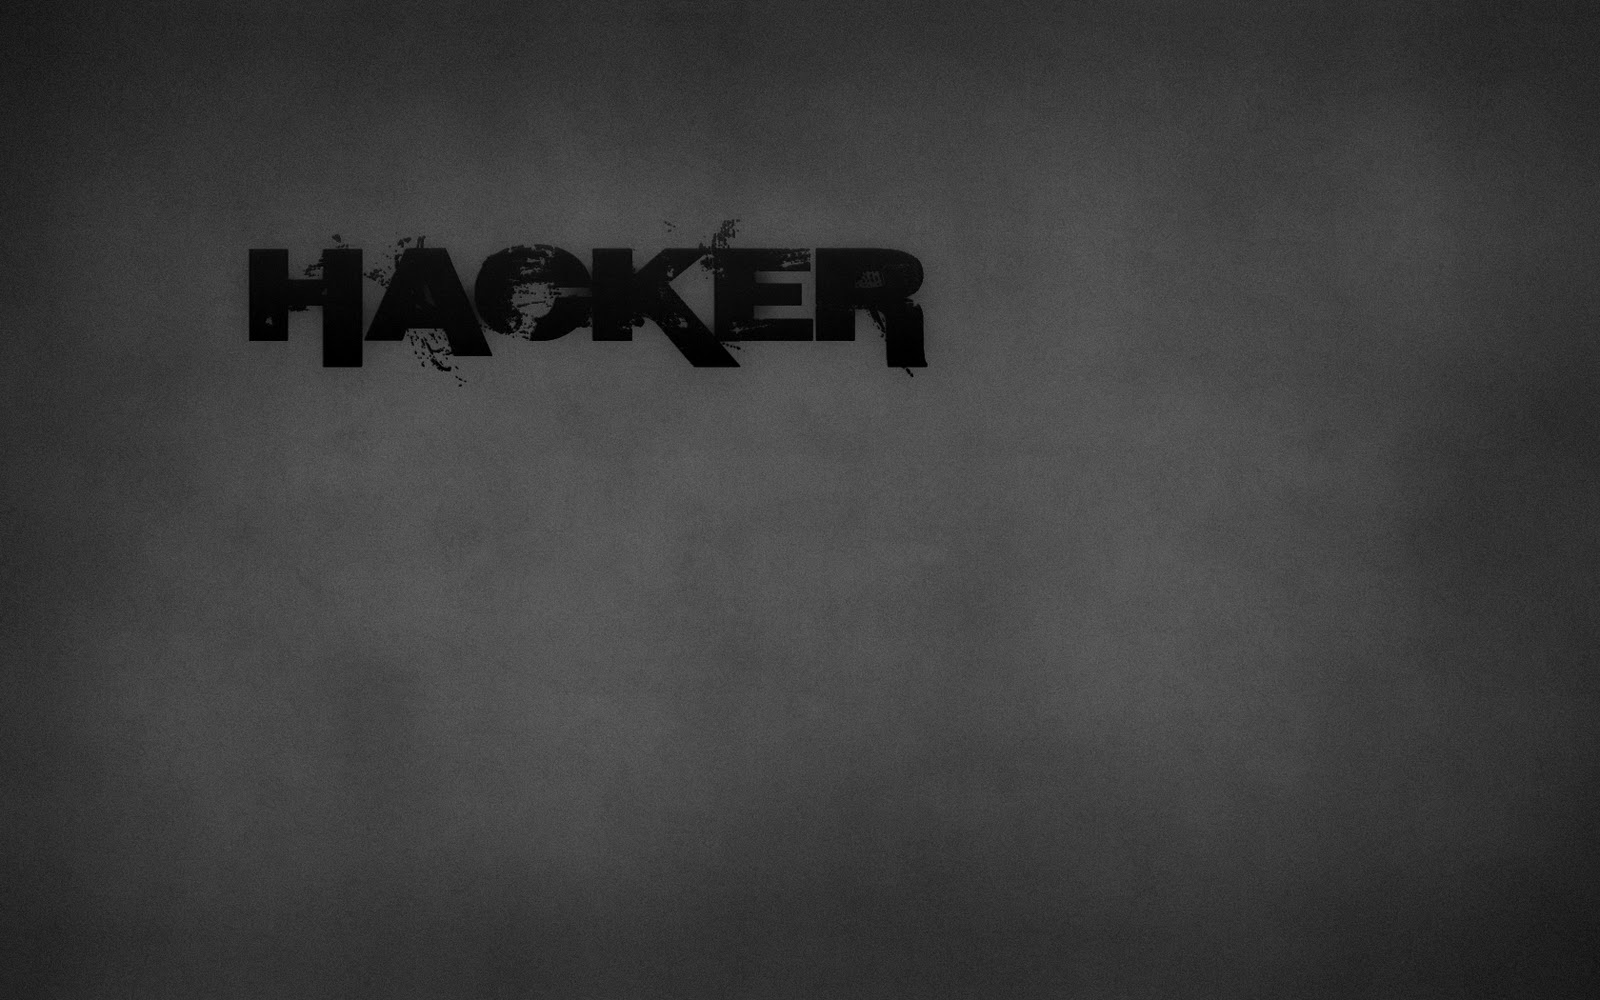 http://3.bp.blogspot.com/-_Nz5ZENUy_M/TtdSLGkytoI/AAAAAAAAAMg/BdWUtX7_OvA/s1600/security_hacker_wallpaper_3_by_securityhacker-d31wb08.jpg